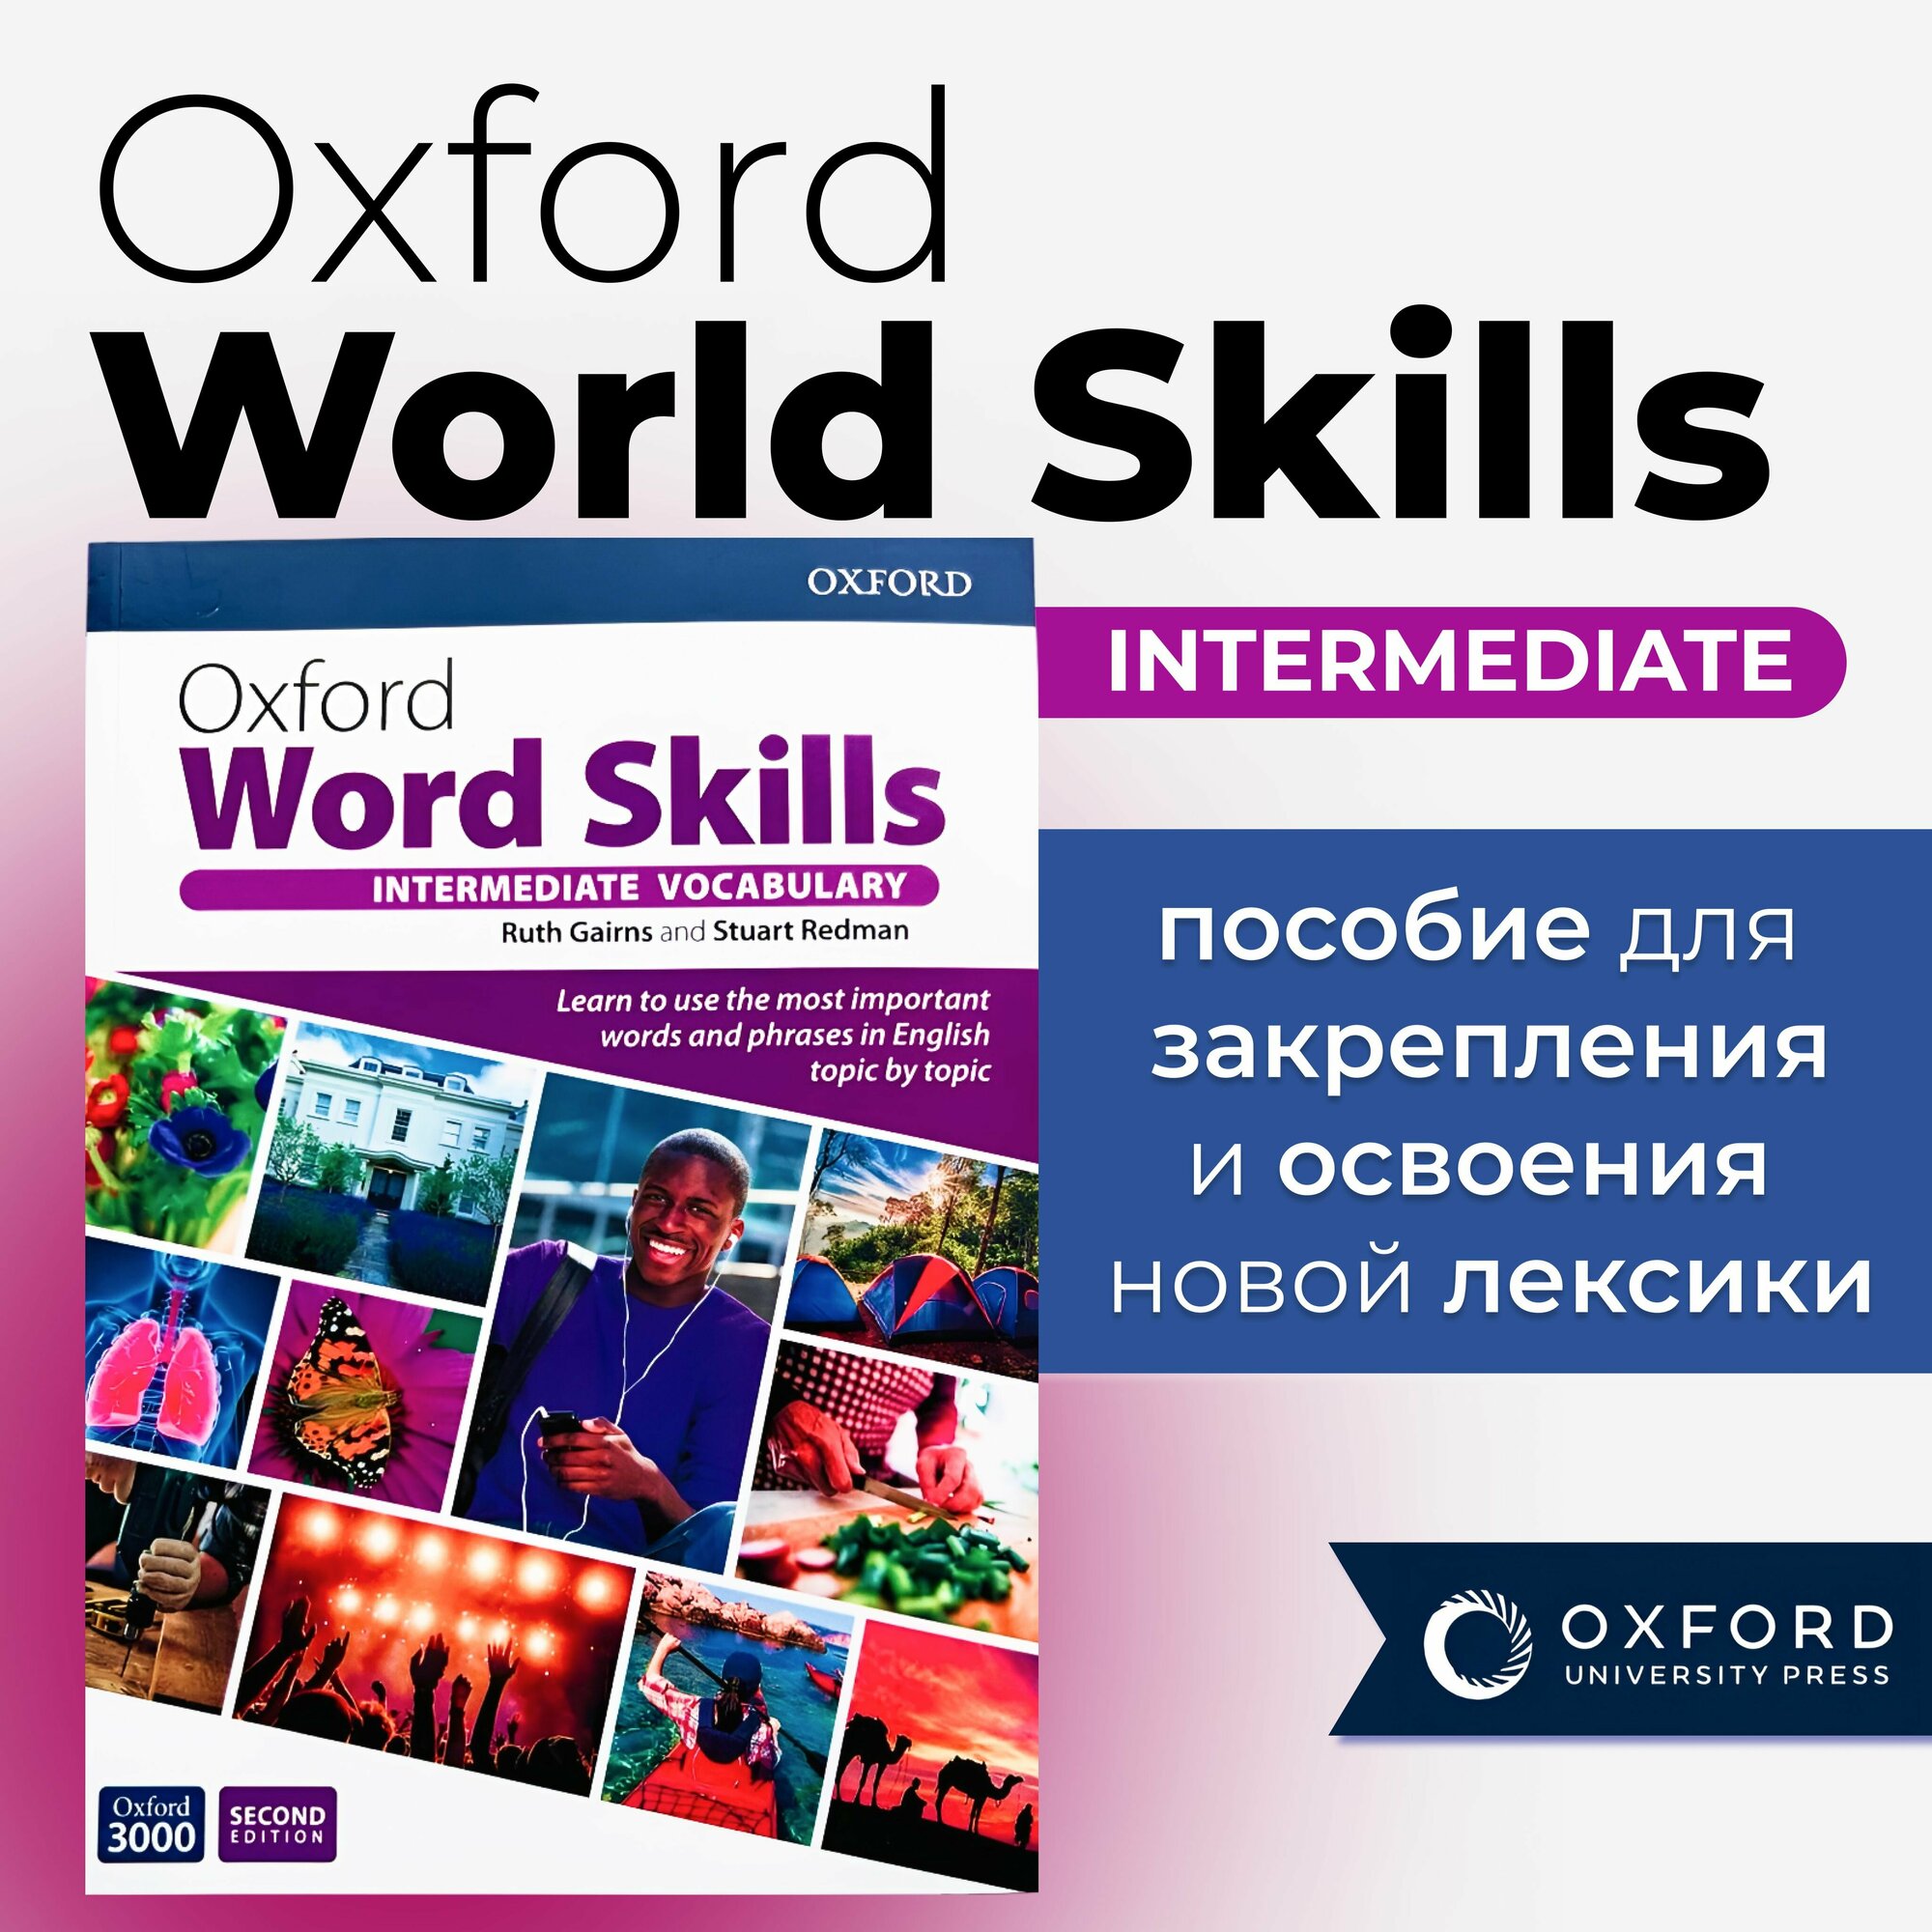 Oxford Word Skills intermediate 2nd edition полноразмерная версия